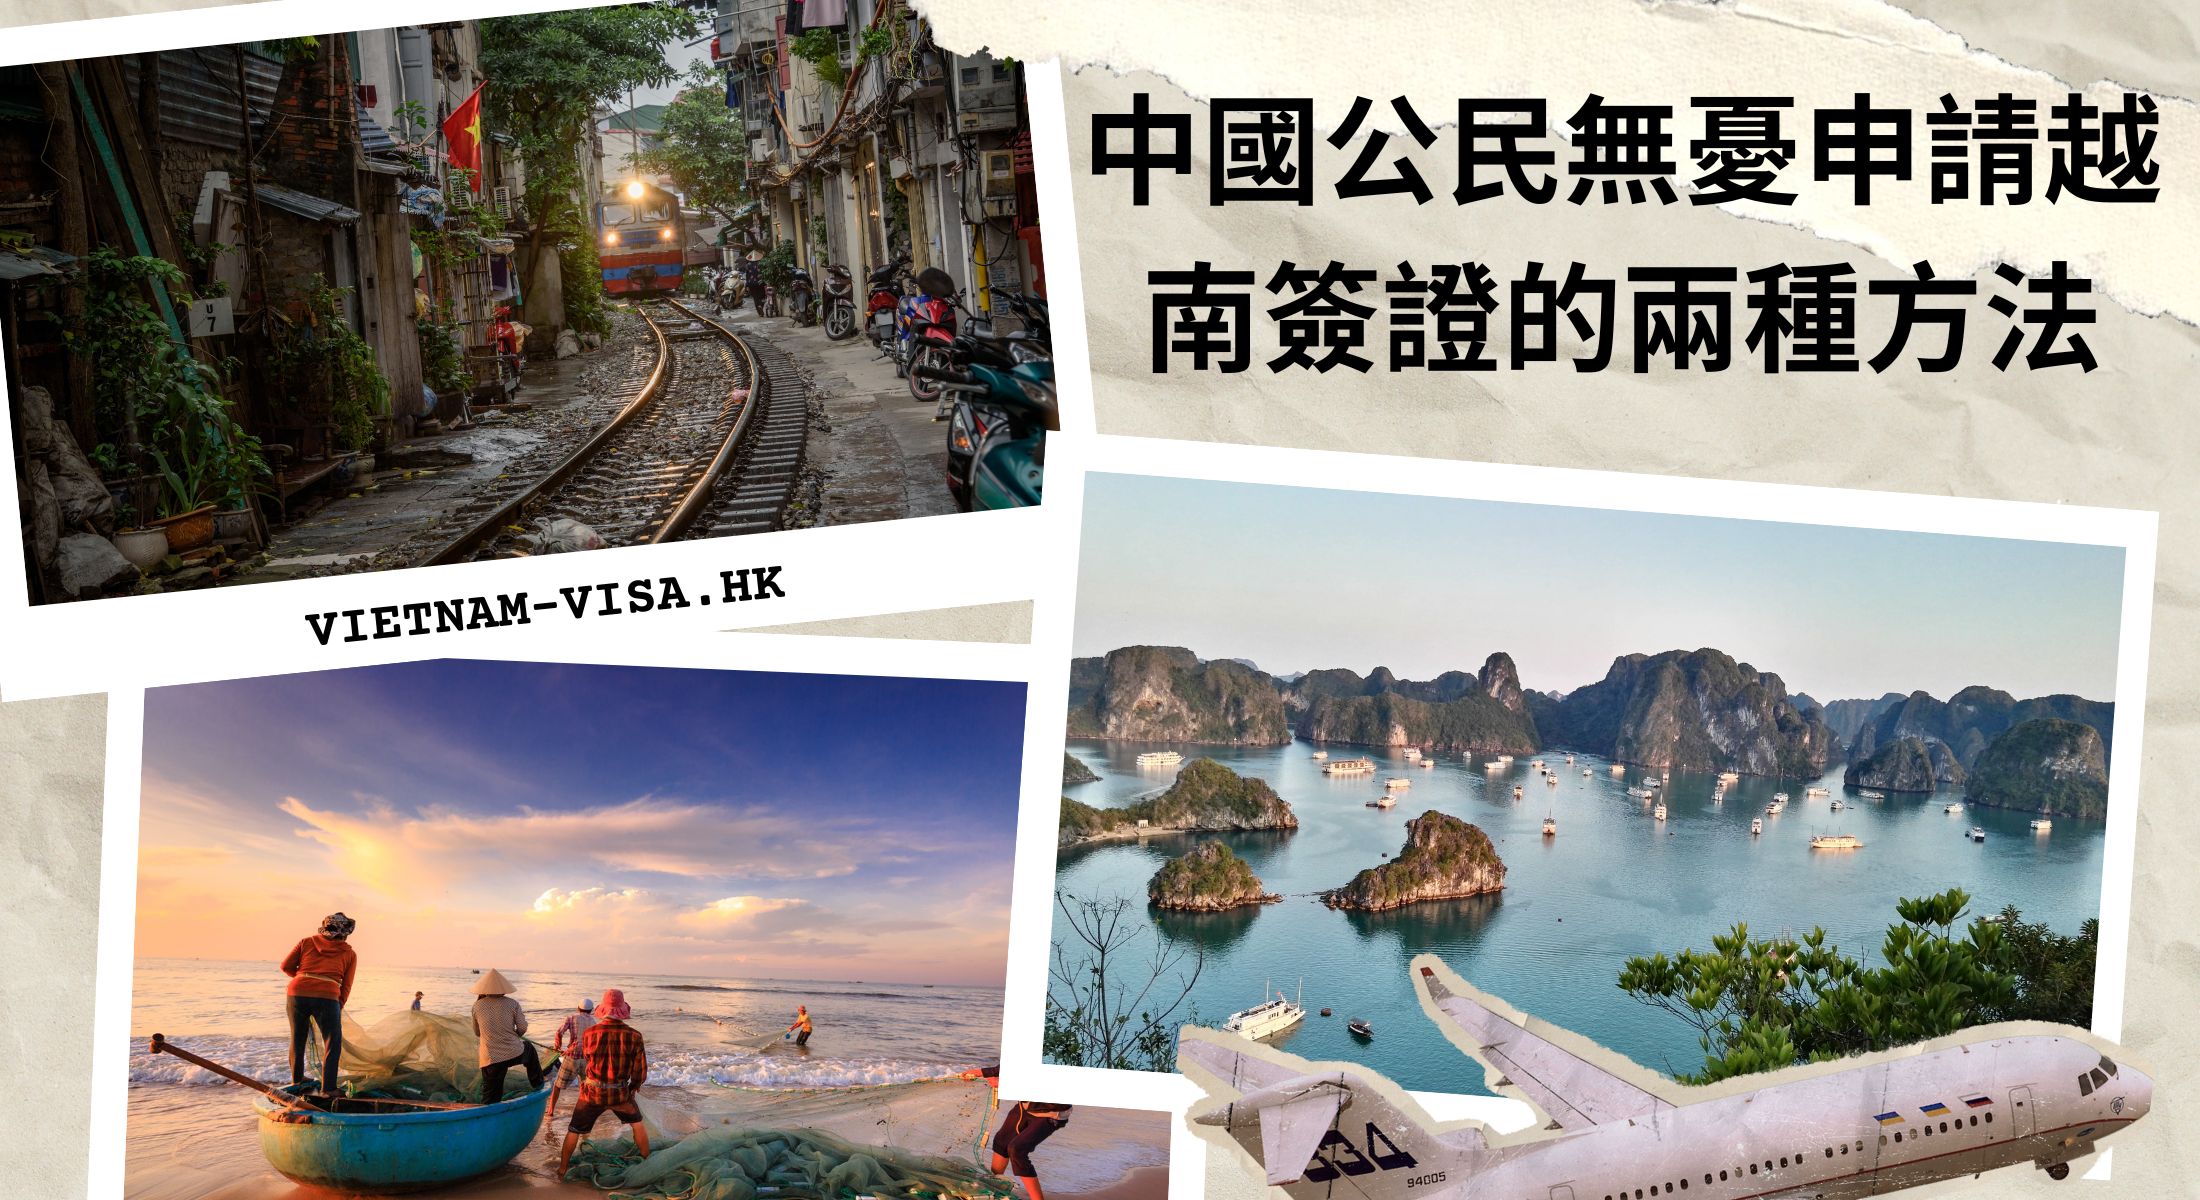 中國公民無憂申請越南簽證的兩種方法